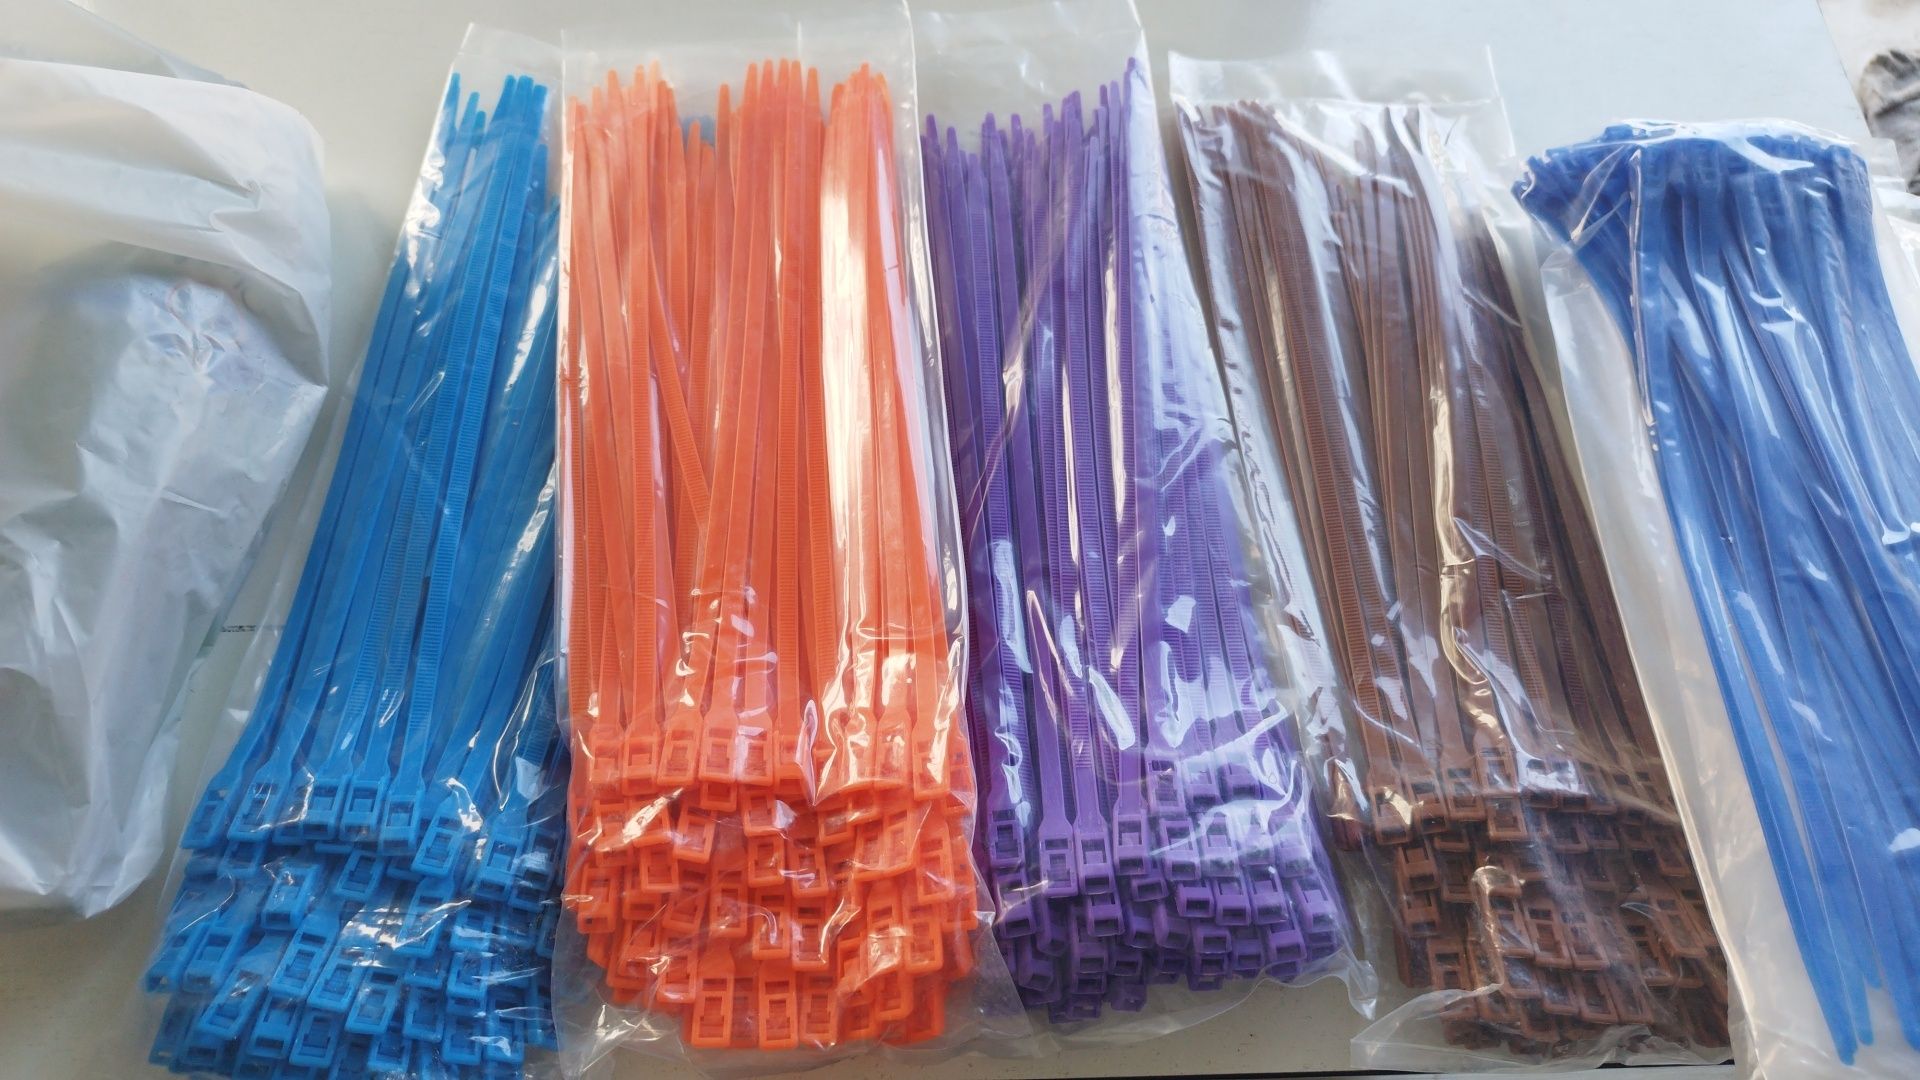 Пластиковые разноцветные хомуты/стяжки для игровых детских лабиринтов